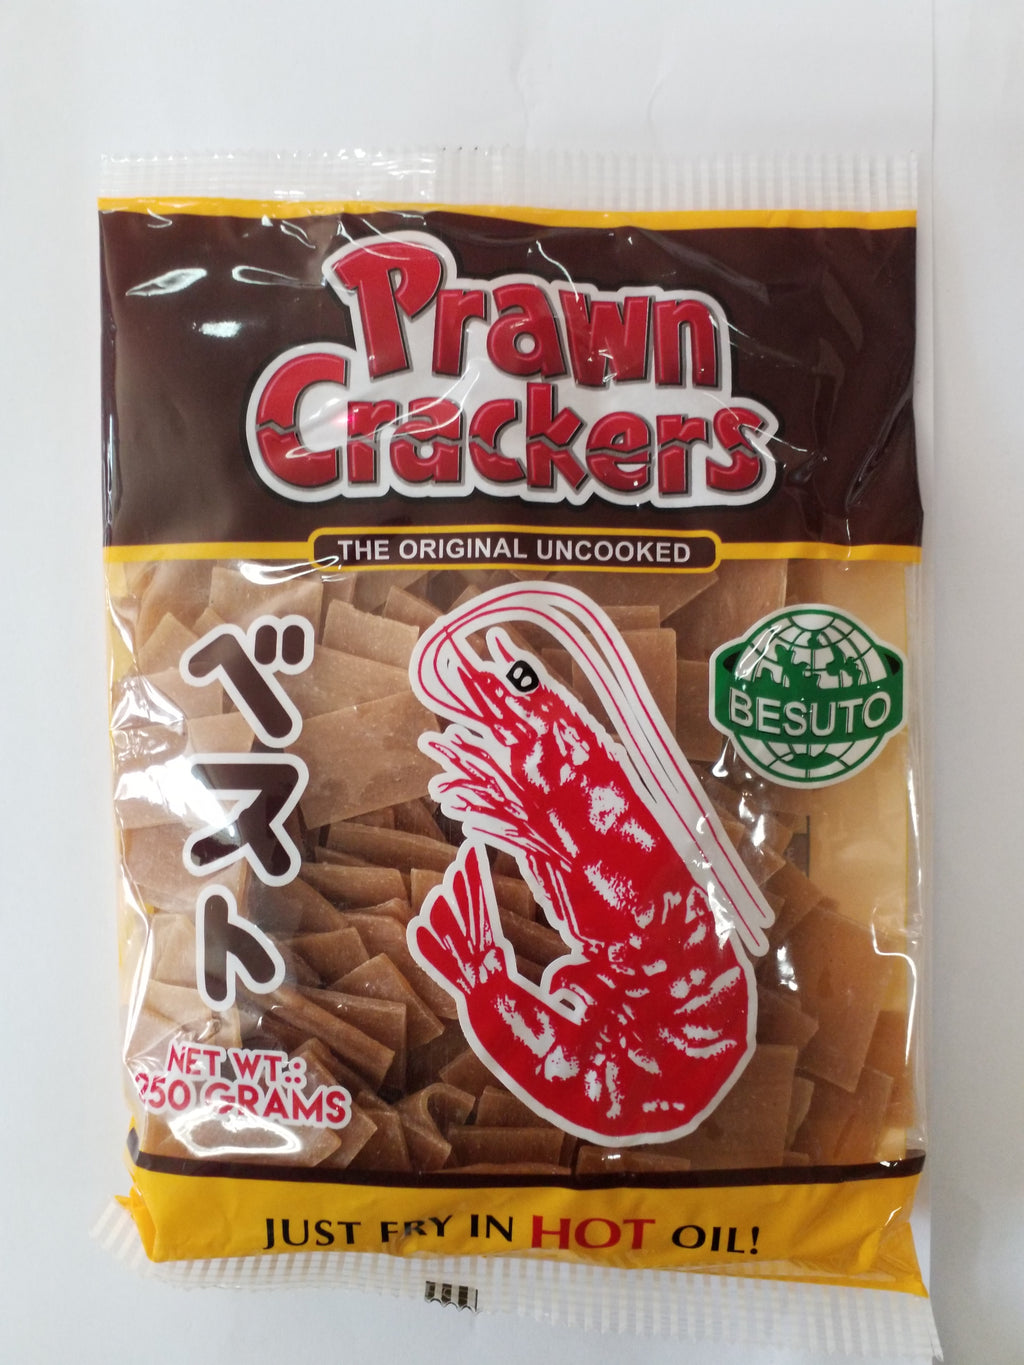 Besuto Prawn Crackers 250g